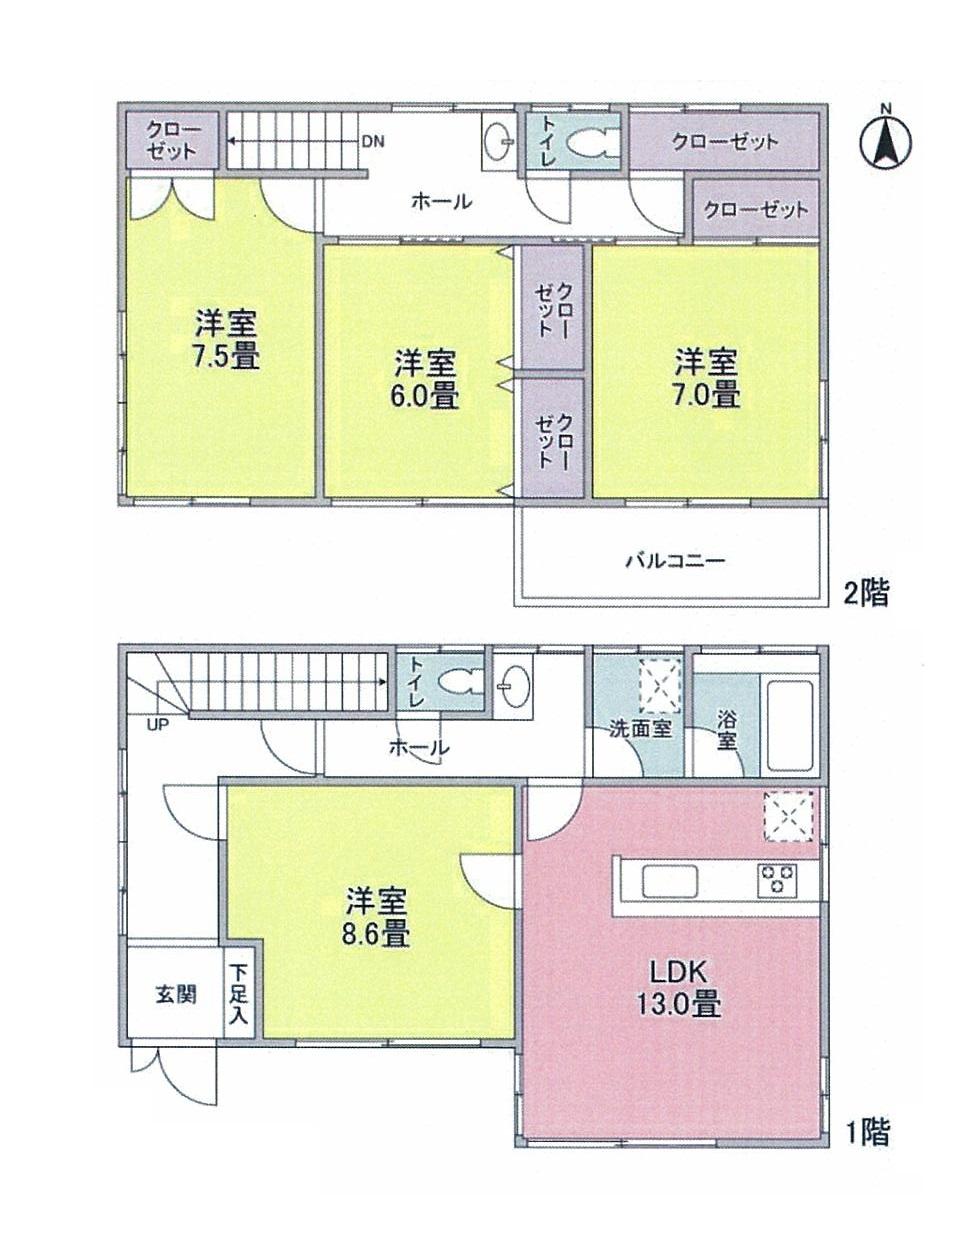 Floor plan. 22,800,000 yen, 4LDK, Land area 93.4 sq m , Building area 109.92 sq m floor plan